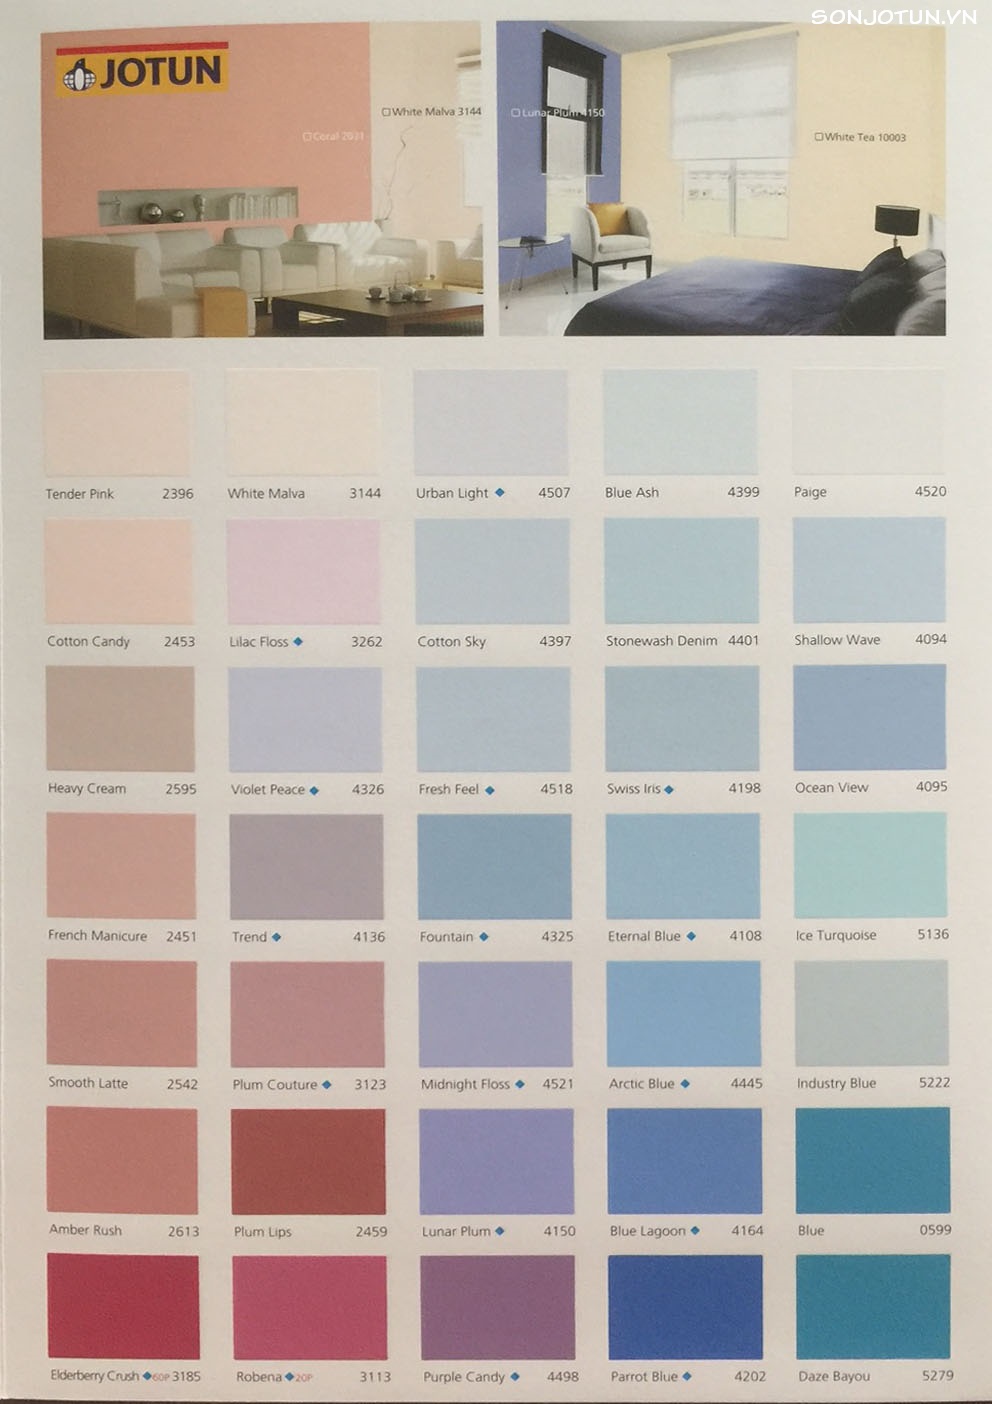 Bộ sưu tập màu sắc Jotun Essence chứa đựng những sắc màu độc đáo và tinh tế, giúp tăng tính thẩm mỹ cho ngôi nhà của bạn. Xem hình ảnh để tìm hiểu thêm về bộ sưu tập màu sắc Jotun Essence.